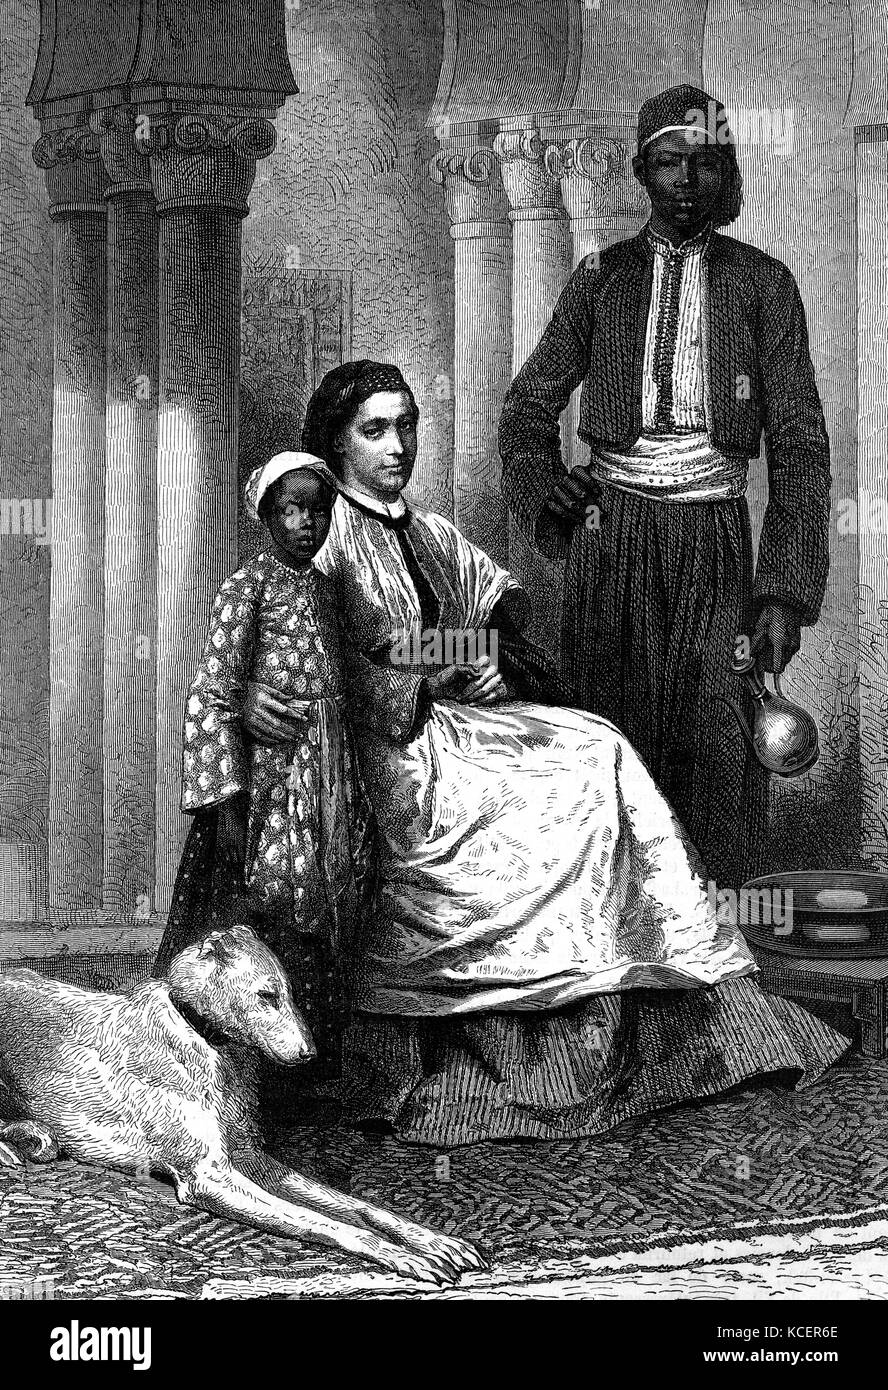 Graviert Portrait von Alexandrine Tinné (1835-1869) holländische Erbin und Explorer von Afrika. Vom 19. Jahrhundert Stockfoto